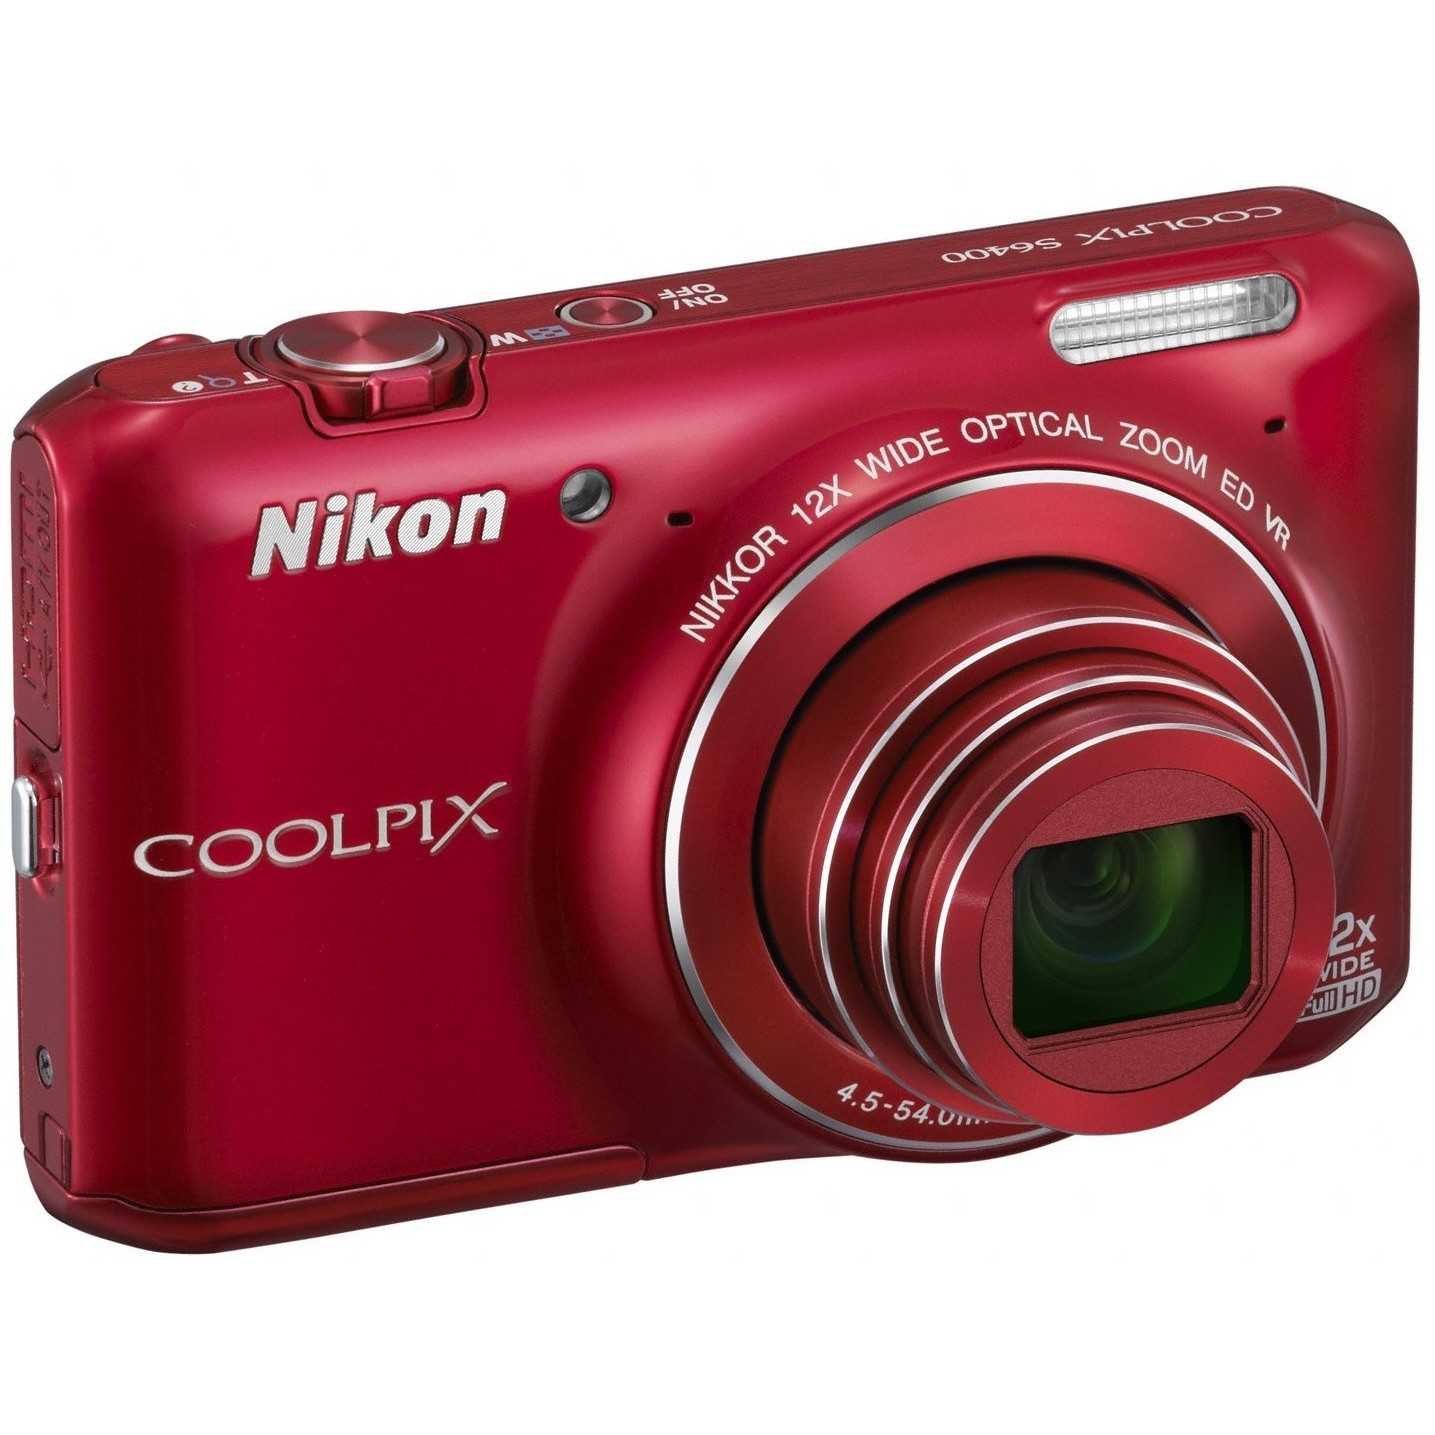 Цифровой фотоаппарат Nikon Coolpix S51 - подробные характеристики обзоры видео фото Цены в интернет-магазинах где можно купить цифровую фотоаппарат Nikon Coolpix S51